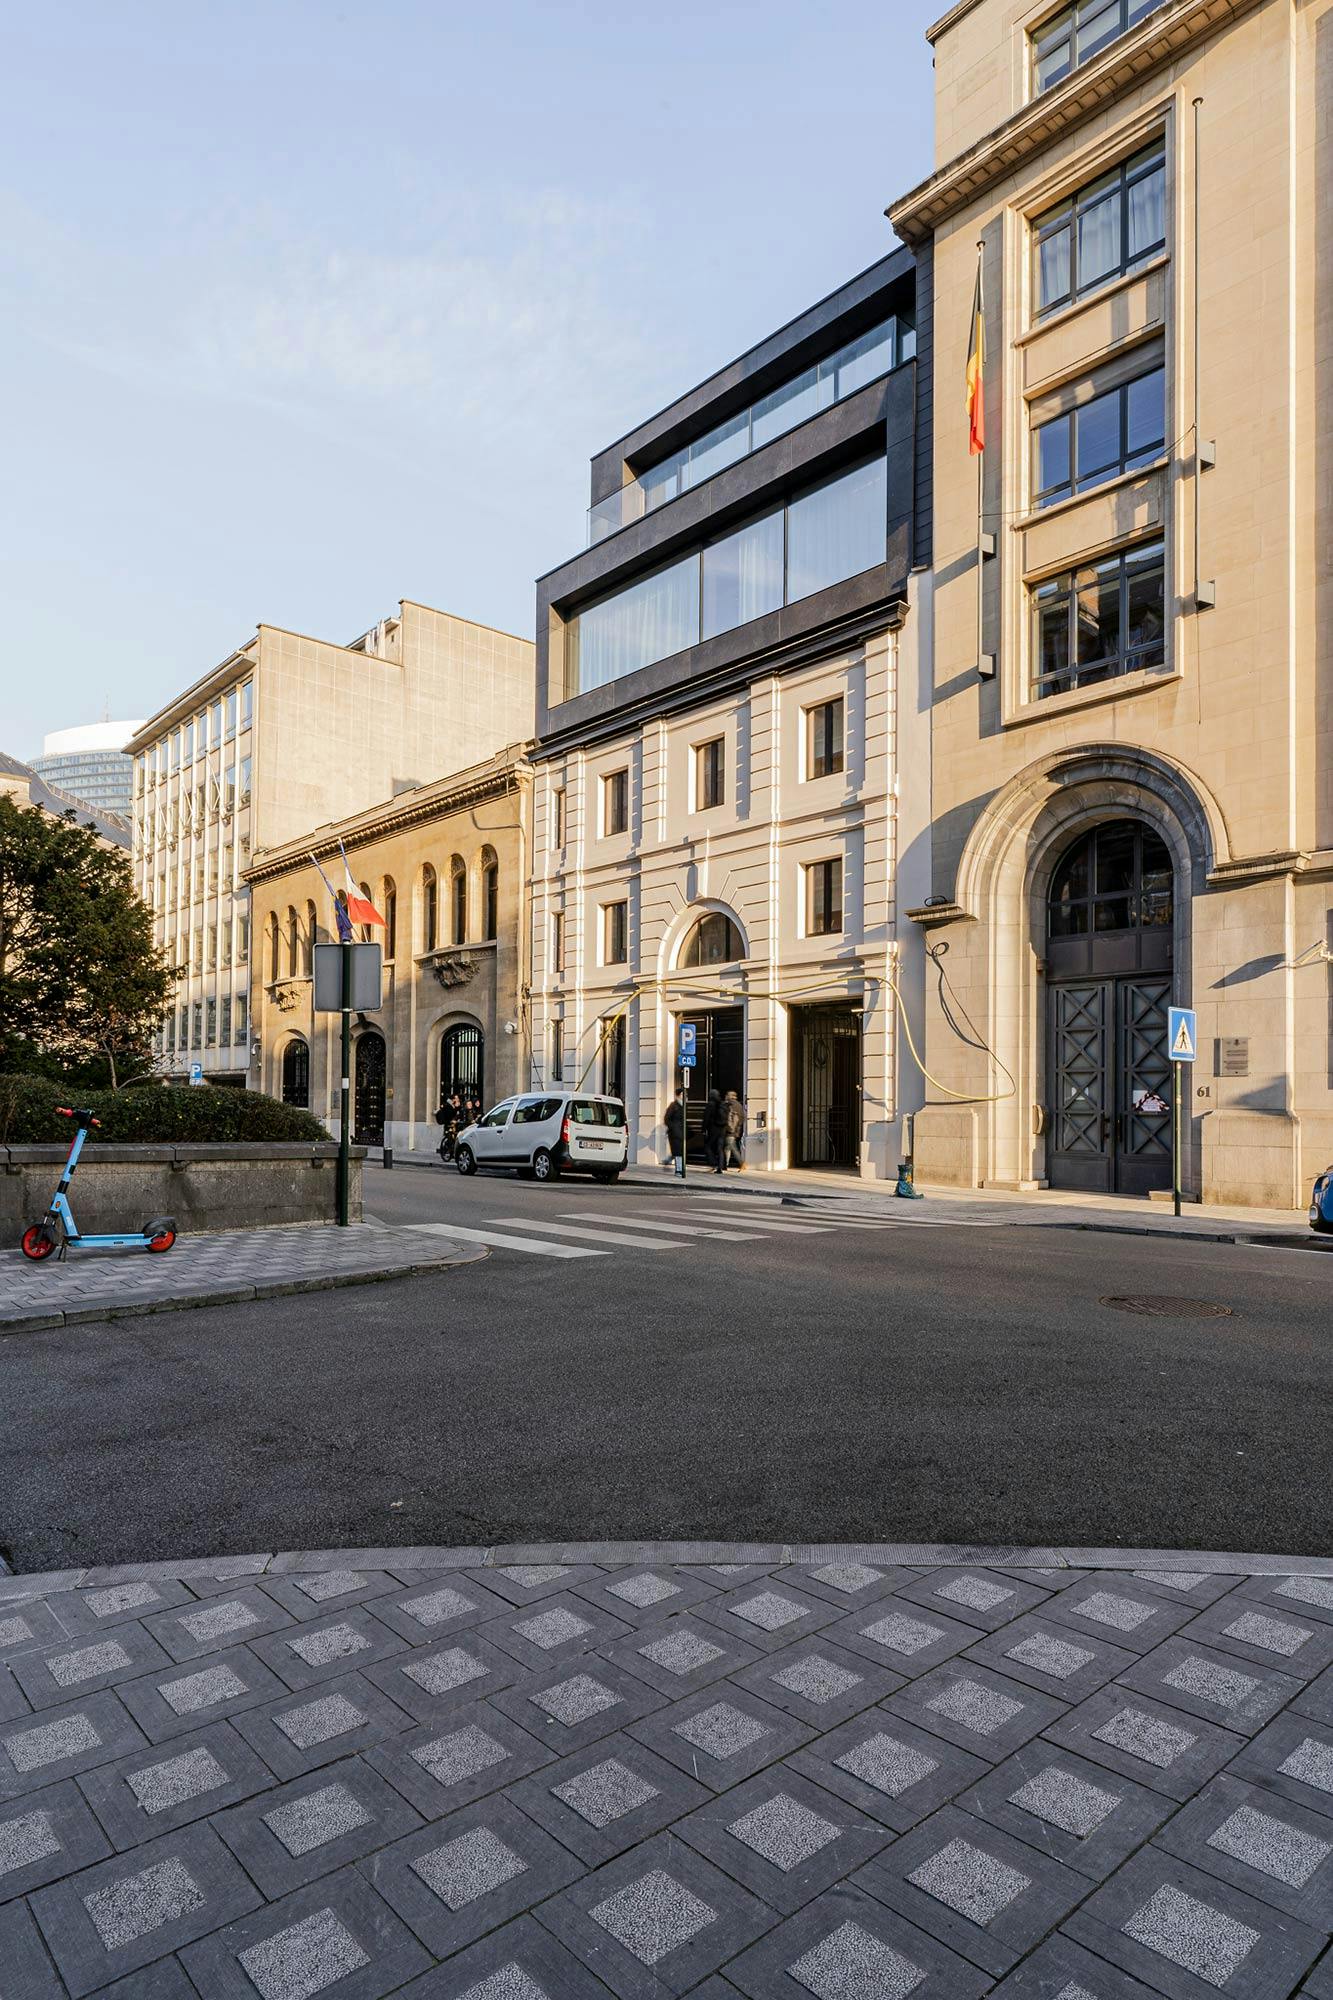 Numéro d'image 46 de la section actuelle de Réflexions en Dekton: la rénovation du bâtiment classique « The Duke » de Bruxelles de Cosentino France